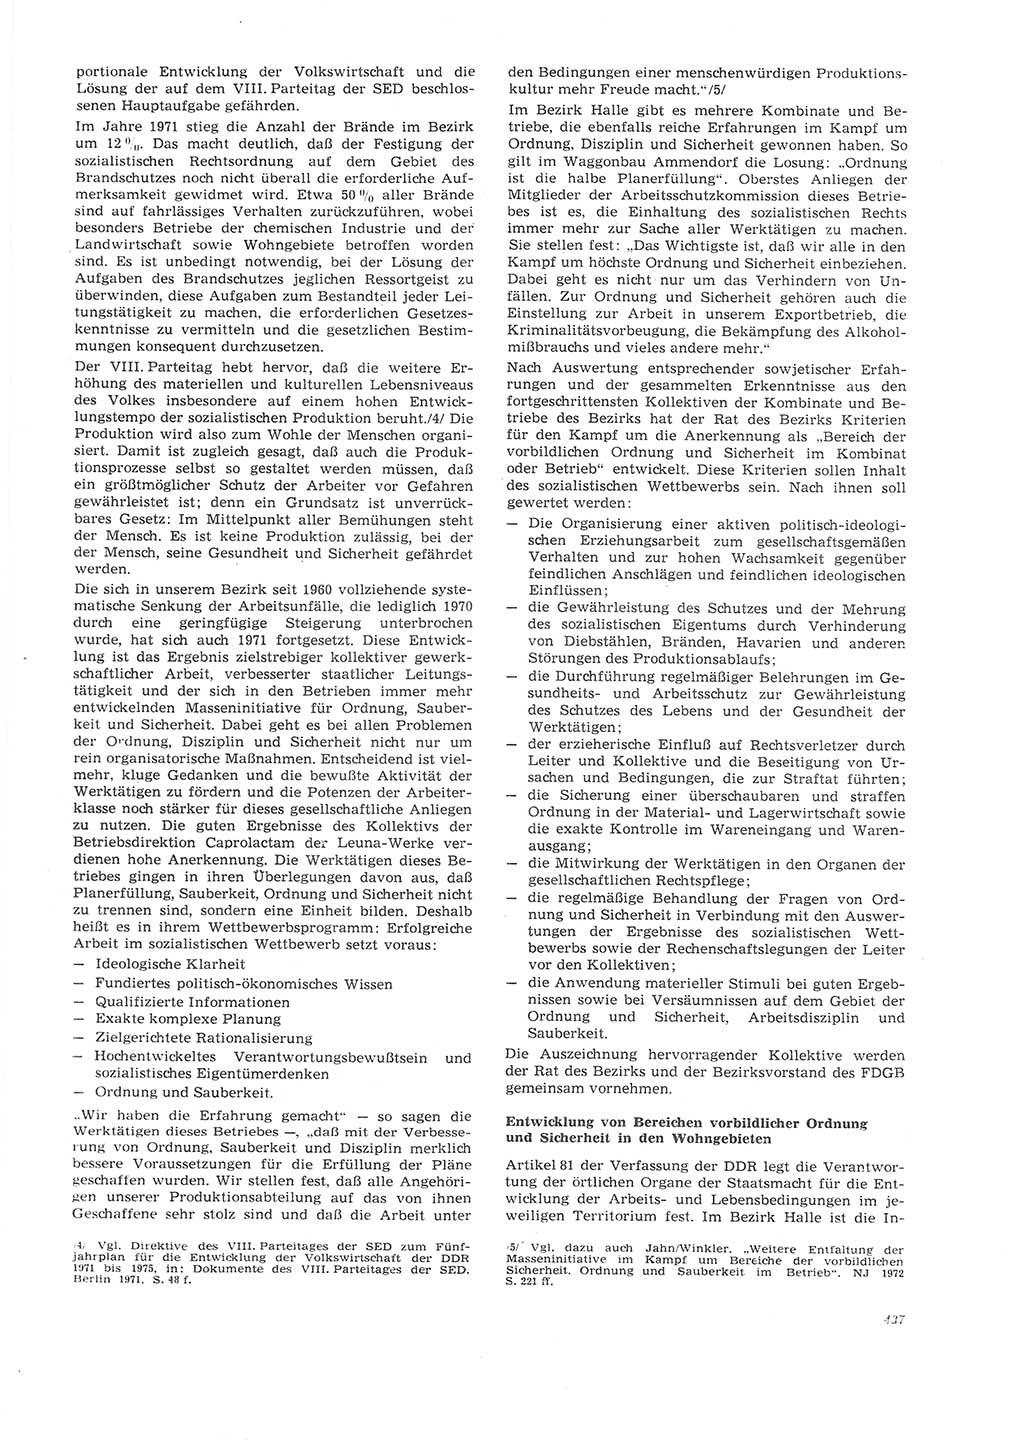 Neue Justiz (NJ), Zeitschrift für Recht und Rechtswissenschaft [Deutsche Demokratische Republik (DDR)], 26. Jahrgang 1972, Seite 437 (NJ DDR 1972, S. 437)